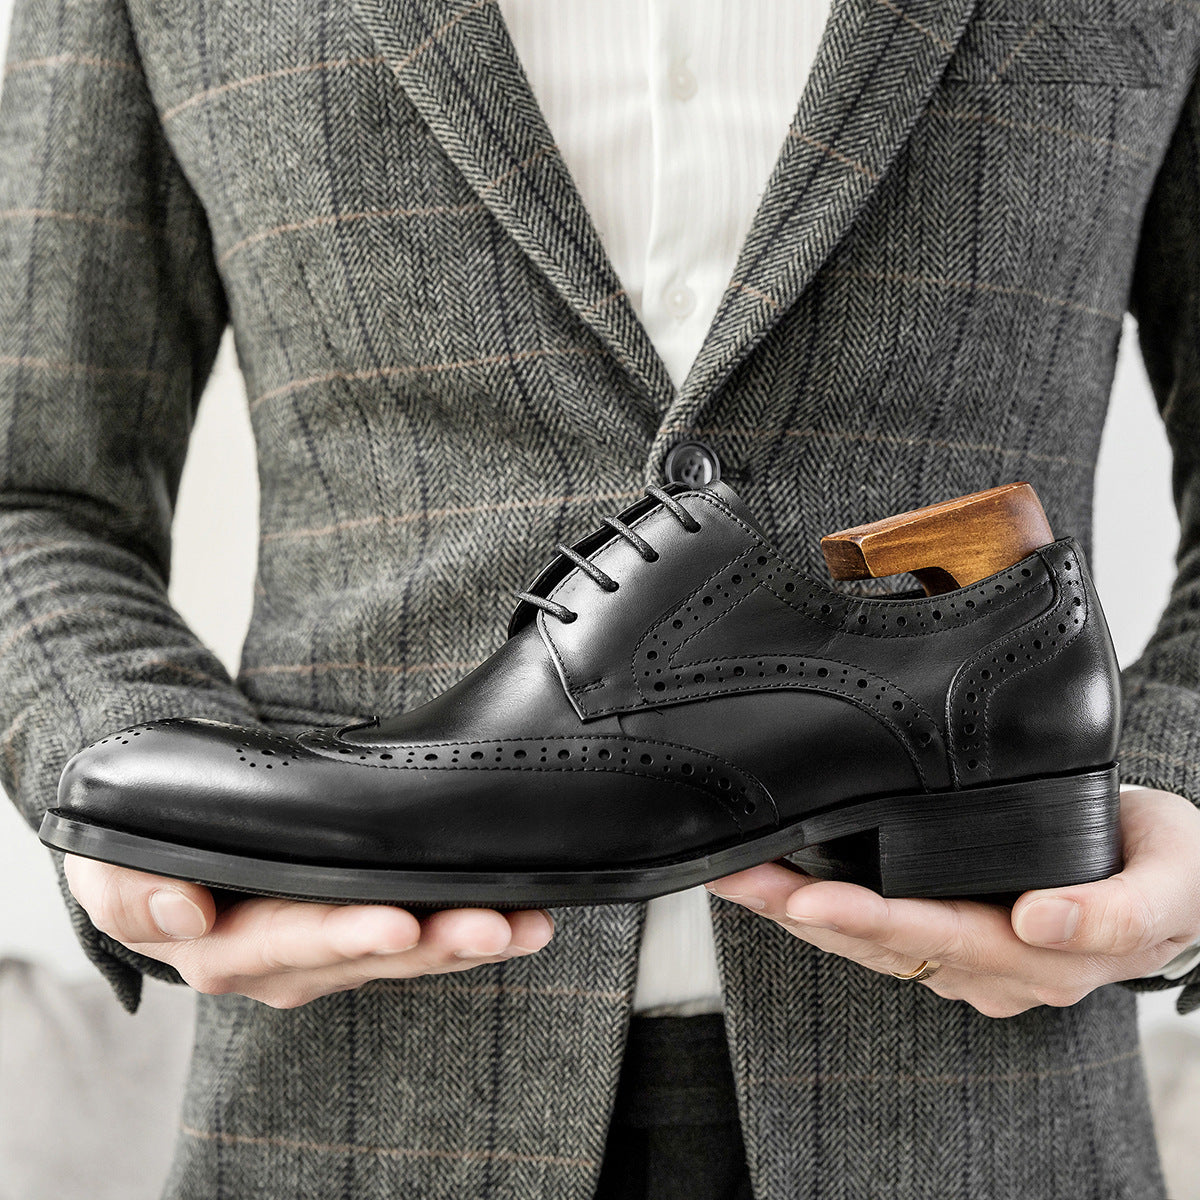 Zapatos clásicos elegantes de cuero tallado de estilo británico para hombre